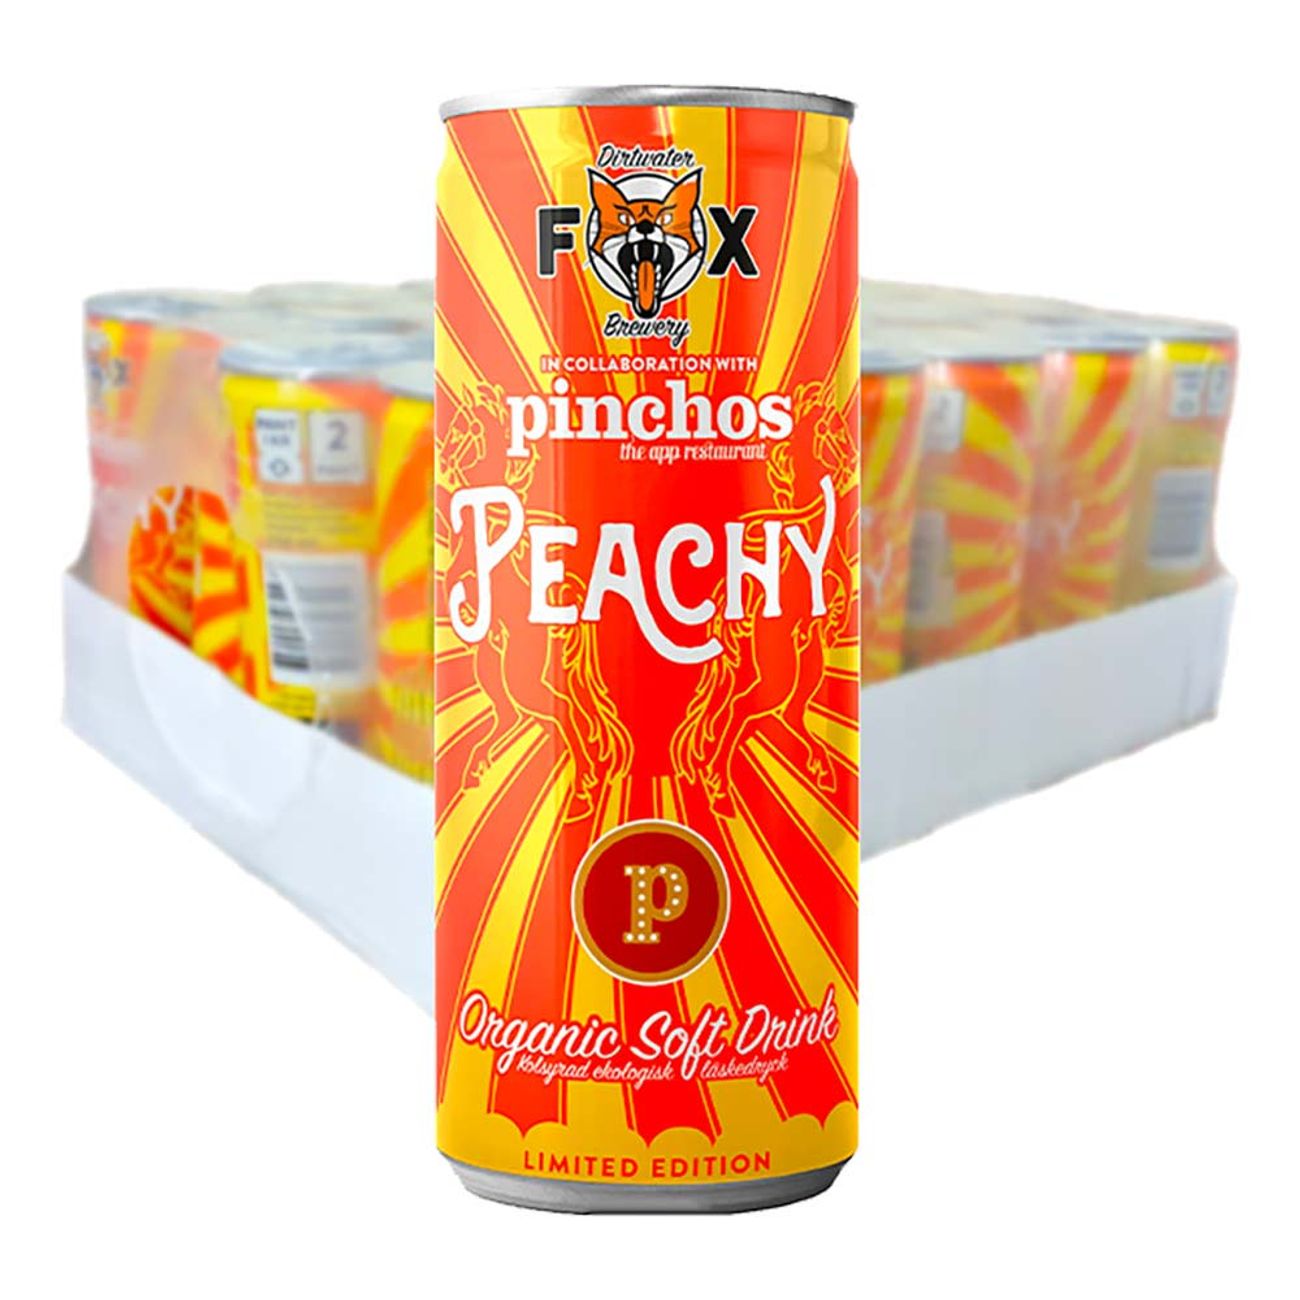 fox-pinchos-peachy-61455-2